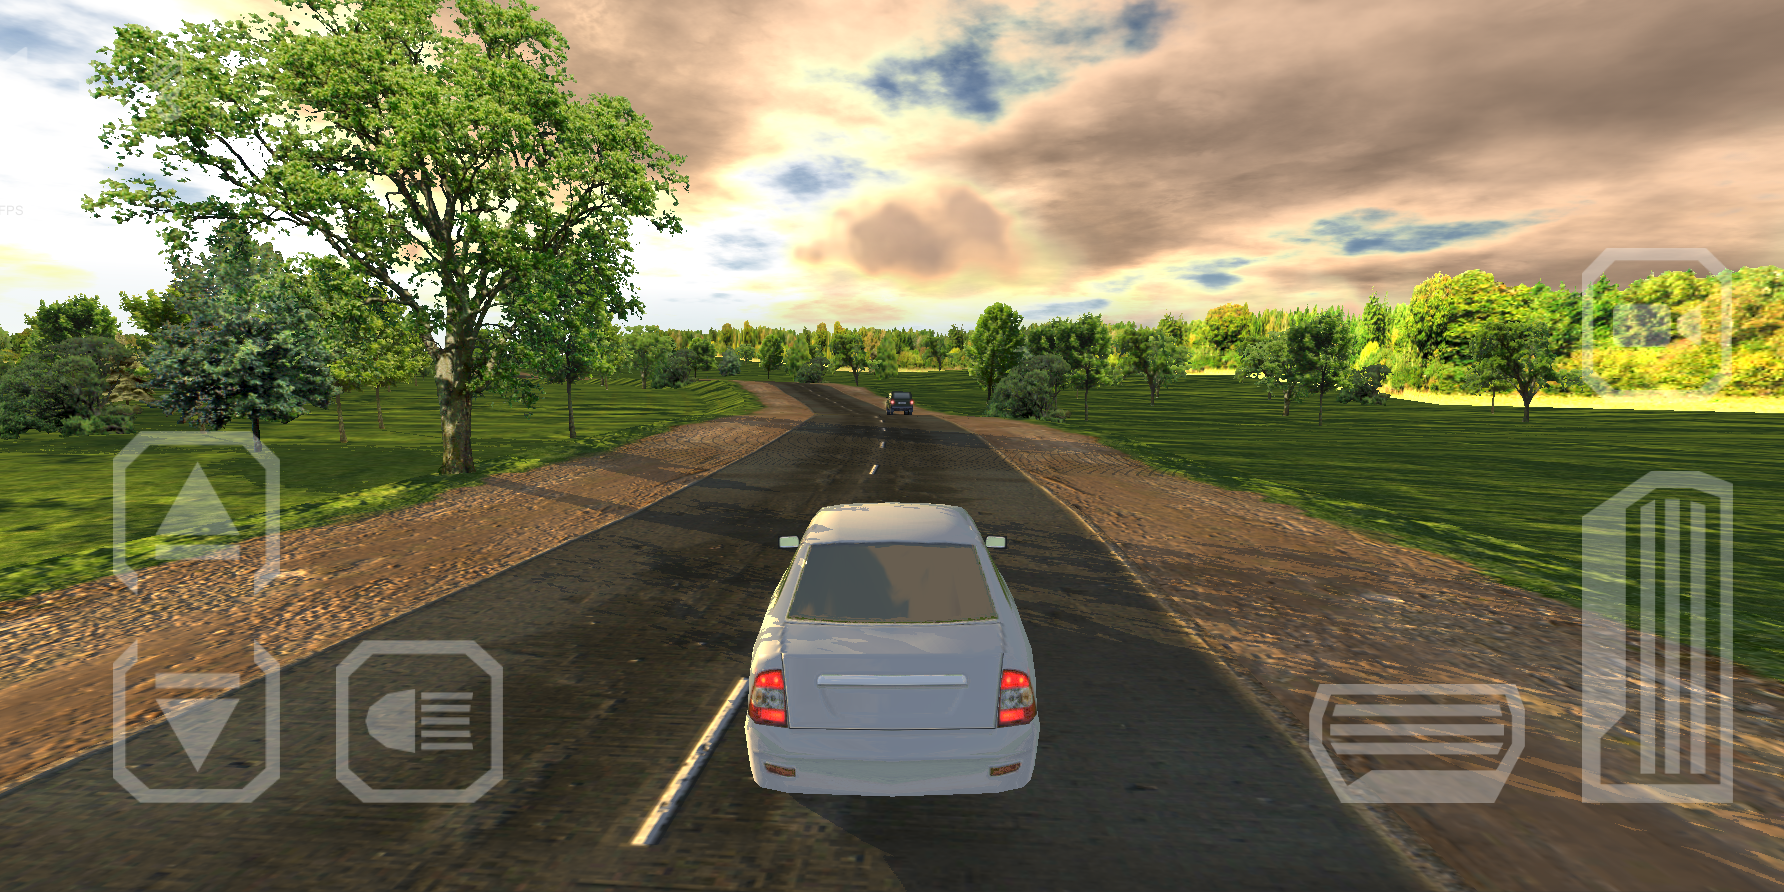 Voyage 4 screenshot game